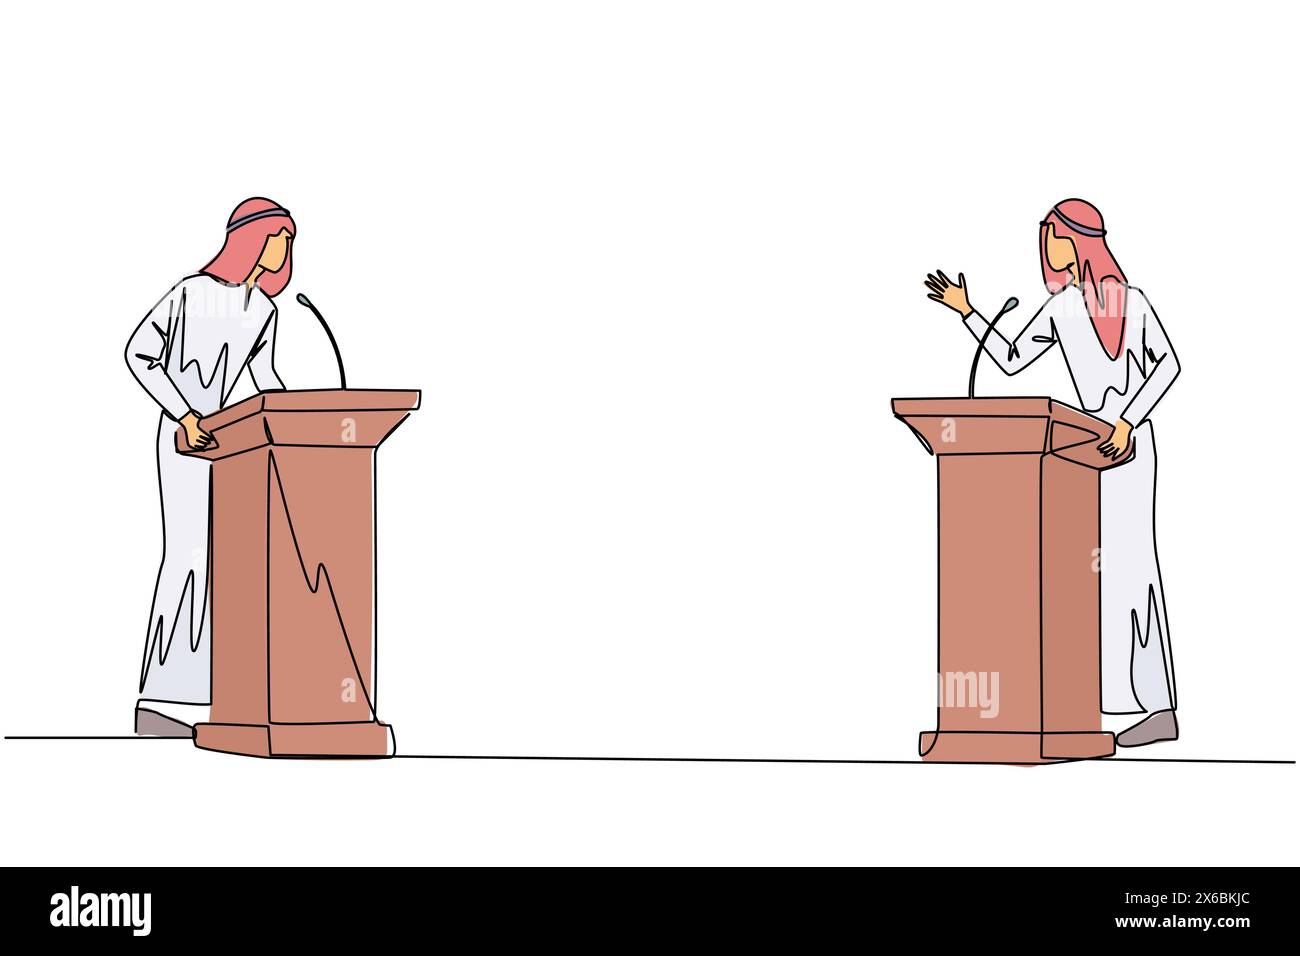 Eine Zeile, die zwei arabische Geschäftsleute auf dem Podium streitet. Meinungen über den besten Weg zur Bekämpfung der globalen Erwärmung abzugeben. Öffnen Sie den Dialog. Debat Stock Vektor